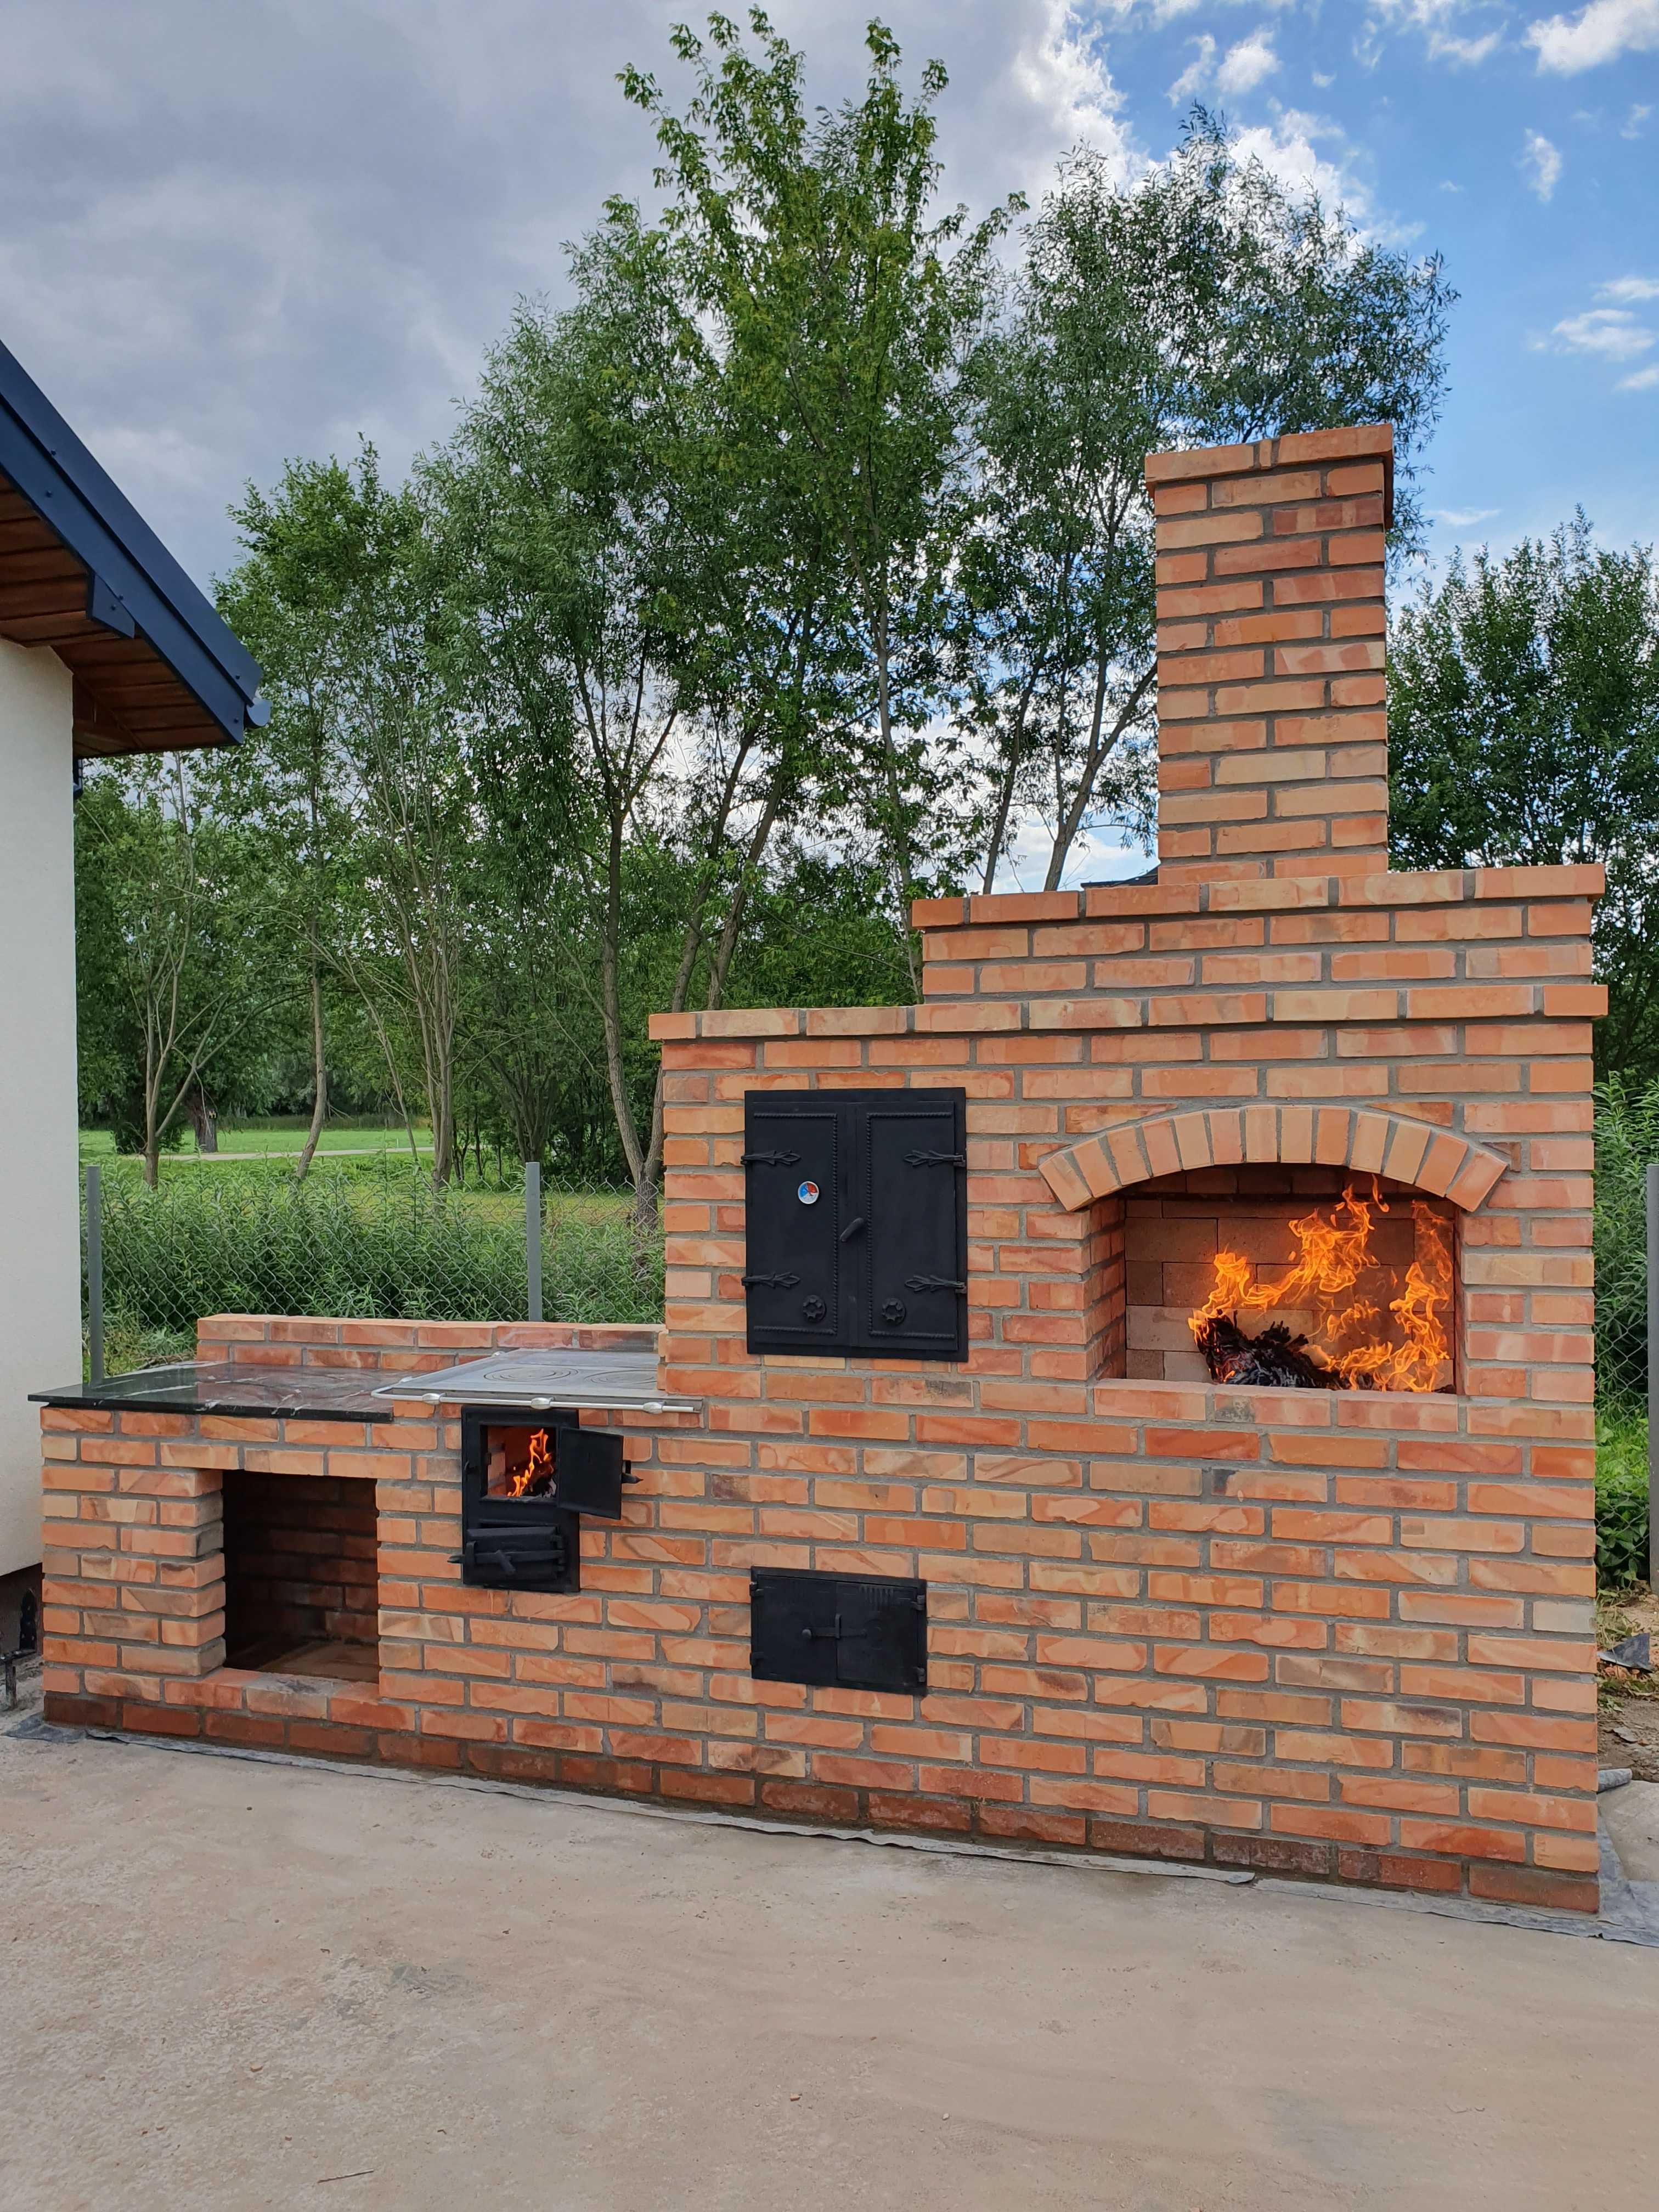 Grillowedzarnia grill murowany kuchnia w ogrodzie